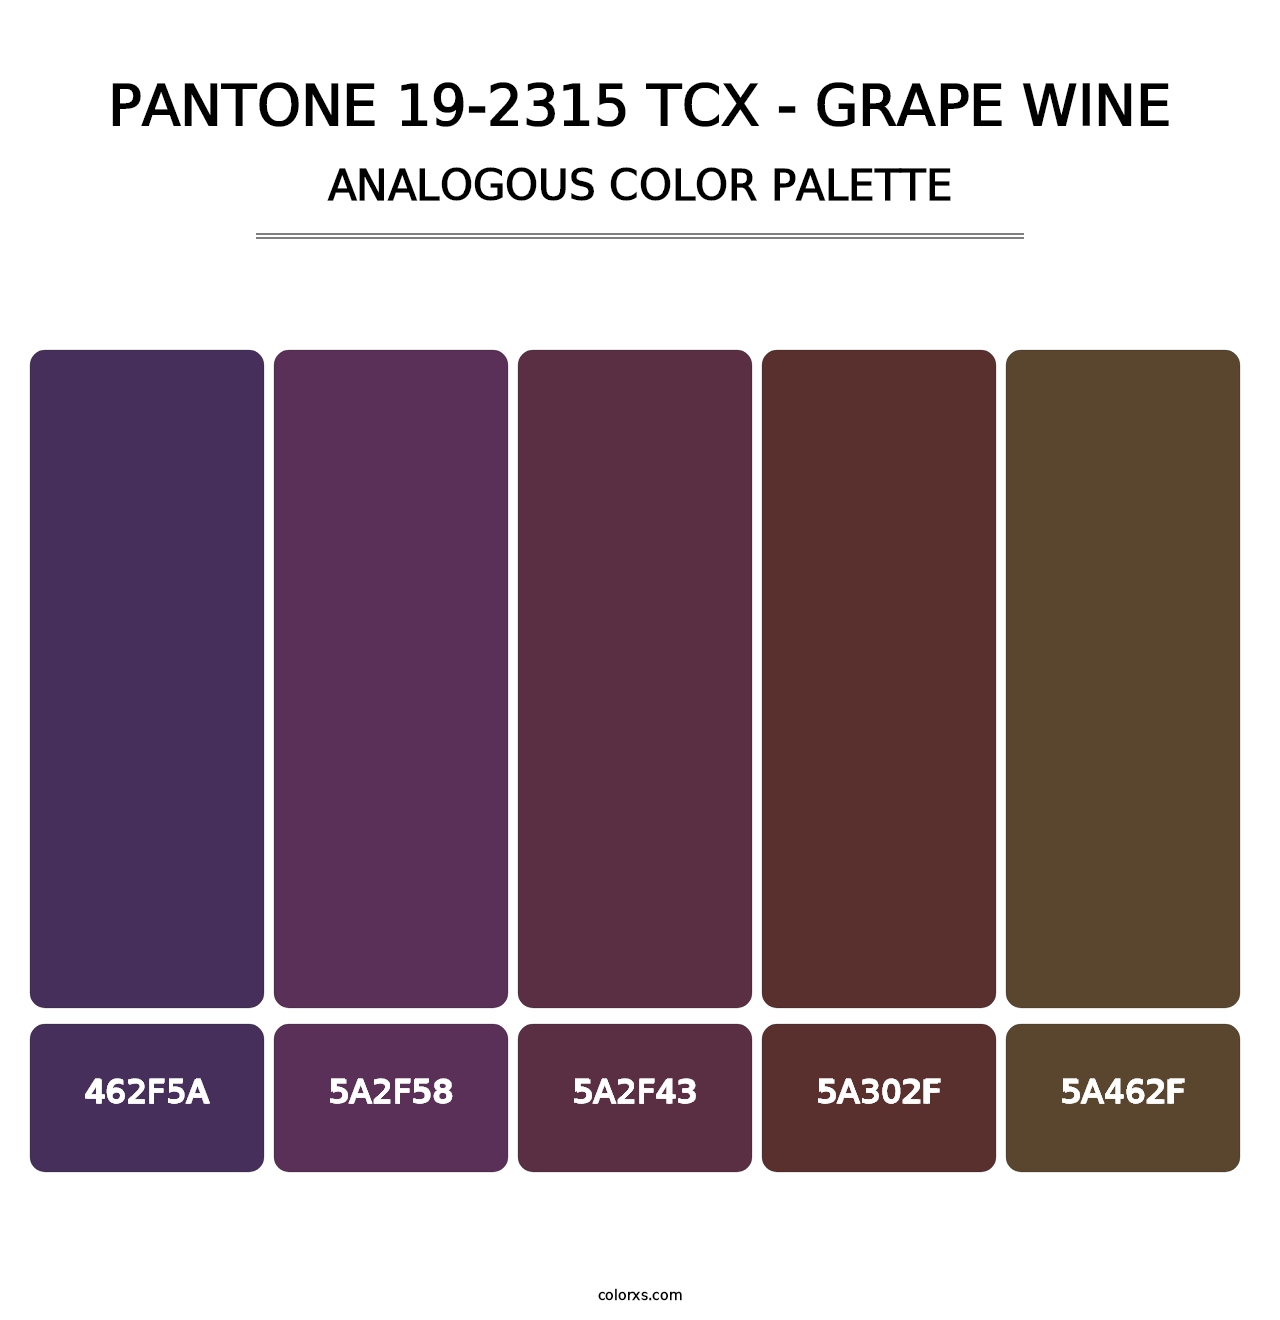 PANTONE 19-2315 TCX - Grape Wine - Analogous Color Palette